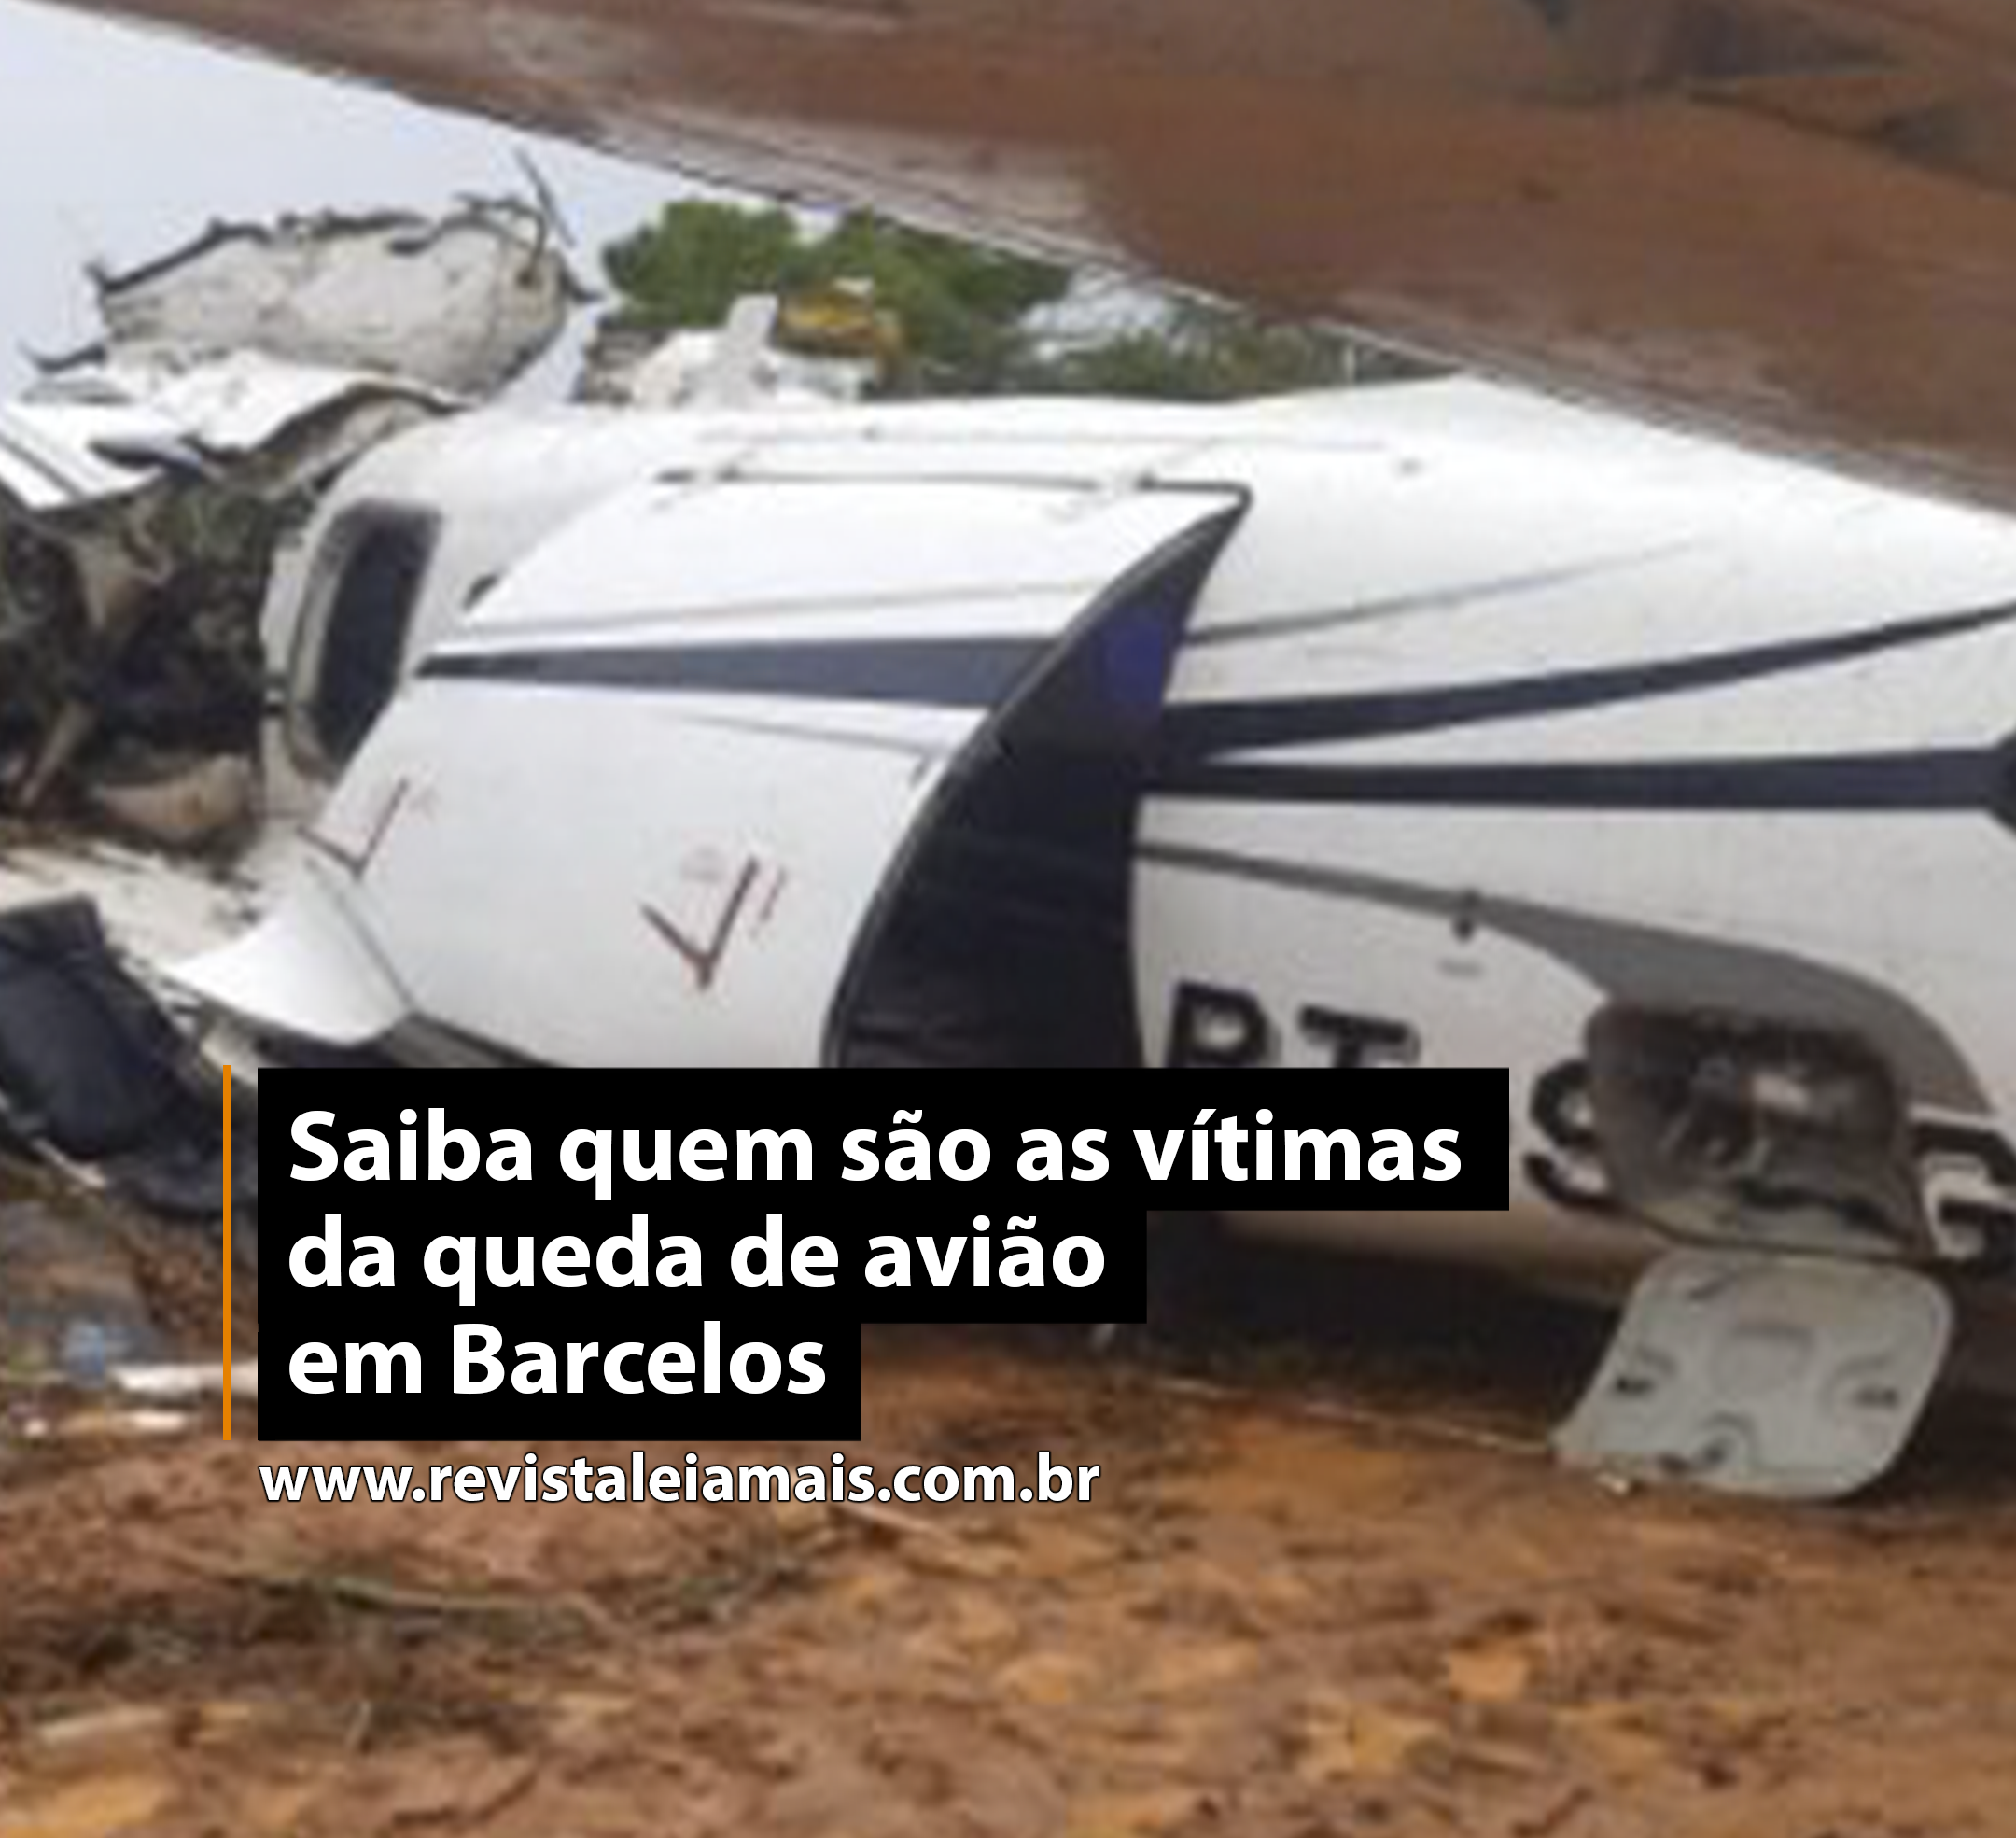 Saiba quem são as vítimas da queda de avião em Barcelos